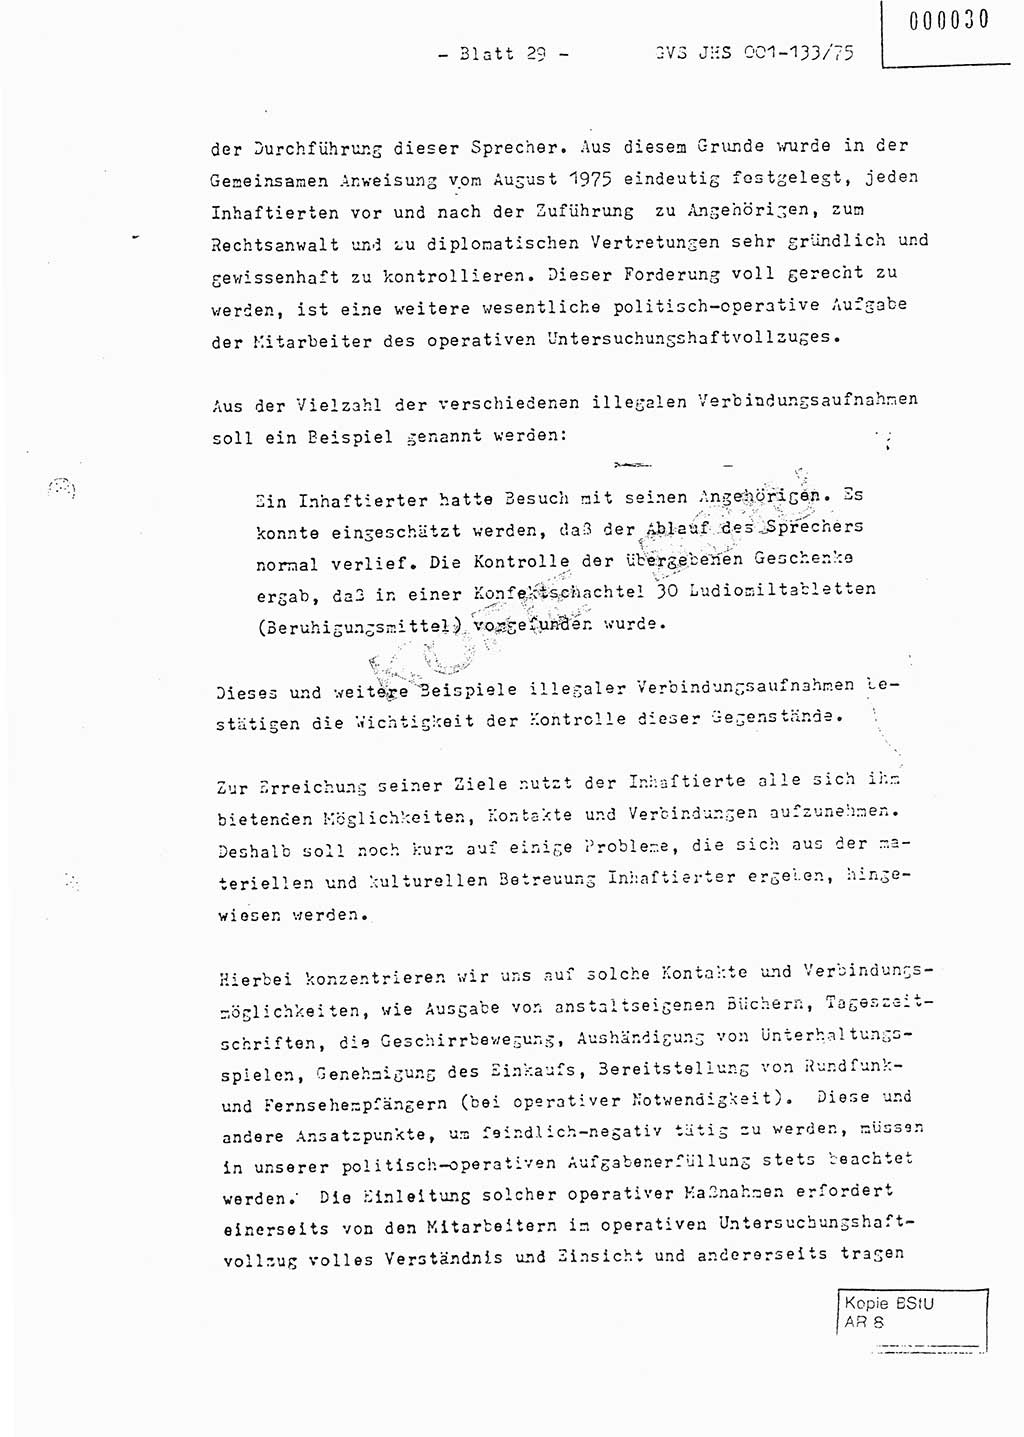 Fachschulabschlußarbeit Major Werner Braun (Abt. ⅩⅣ), Hauptmann Klaus Zeiß (Abt. ⅩⅣ), Ministerium für Staatssicherheit (MfS) [Deutsche Demokratische Republik (DDR)], Juristische Hochschule (JHS), Geheime Verschlußsache (GVS) 001-133/75, Potsdam 1976, Blatt 29 (FS-Abschl.-Arb. MfS DDR JHS GVS 001-133/75 1976, Bl. 29)